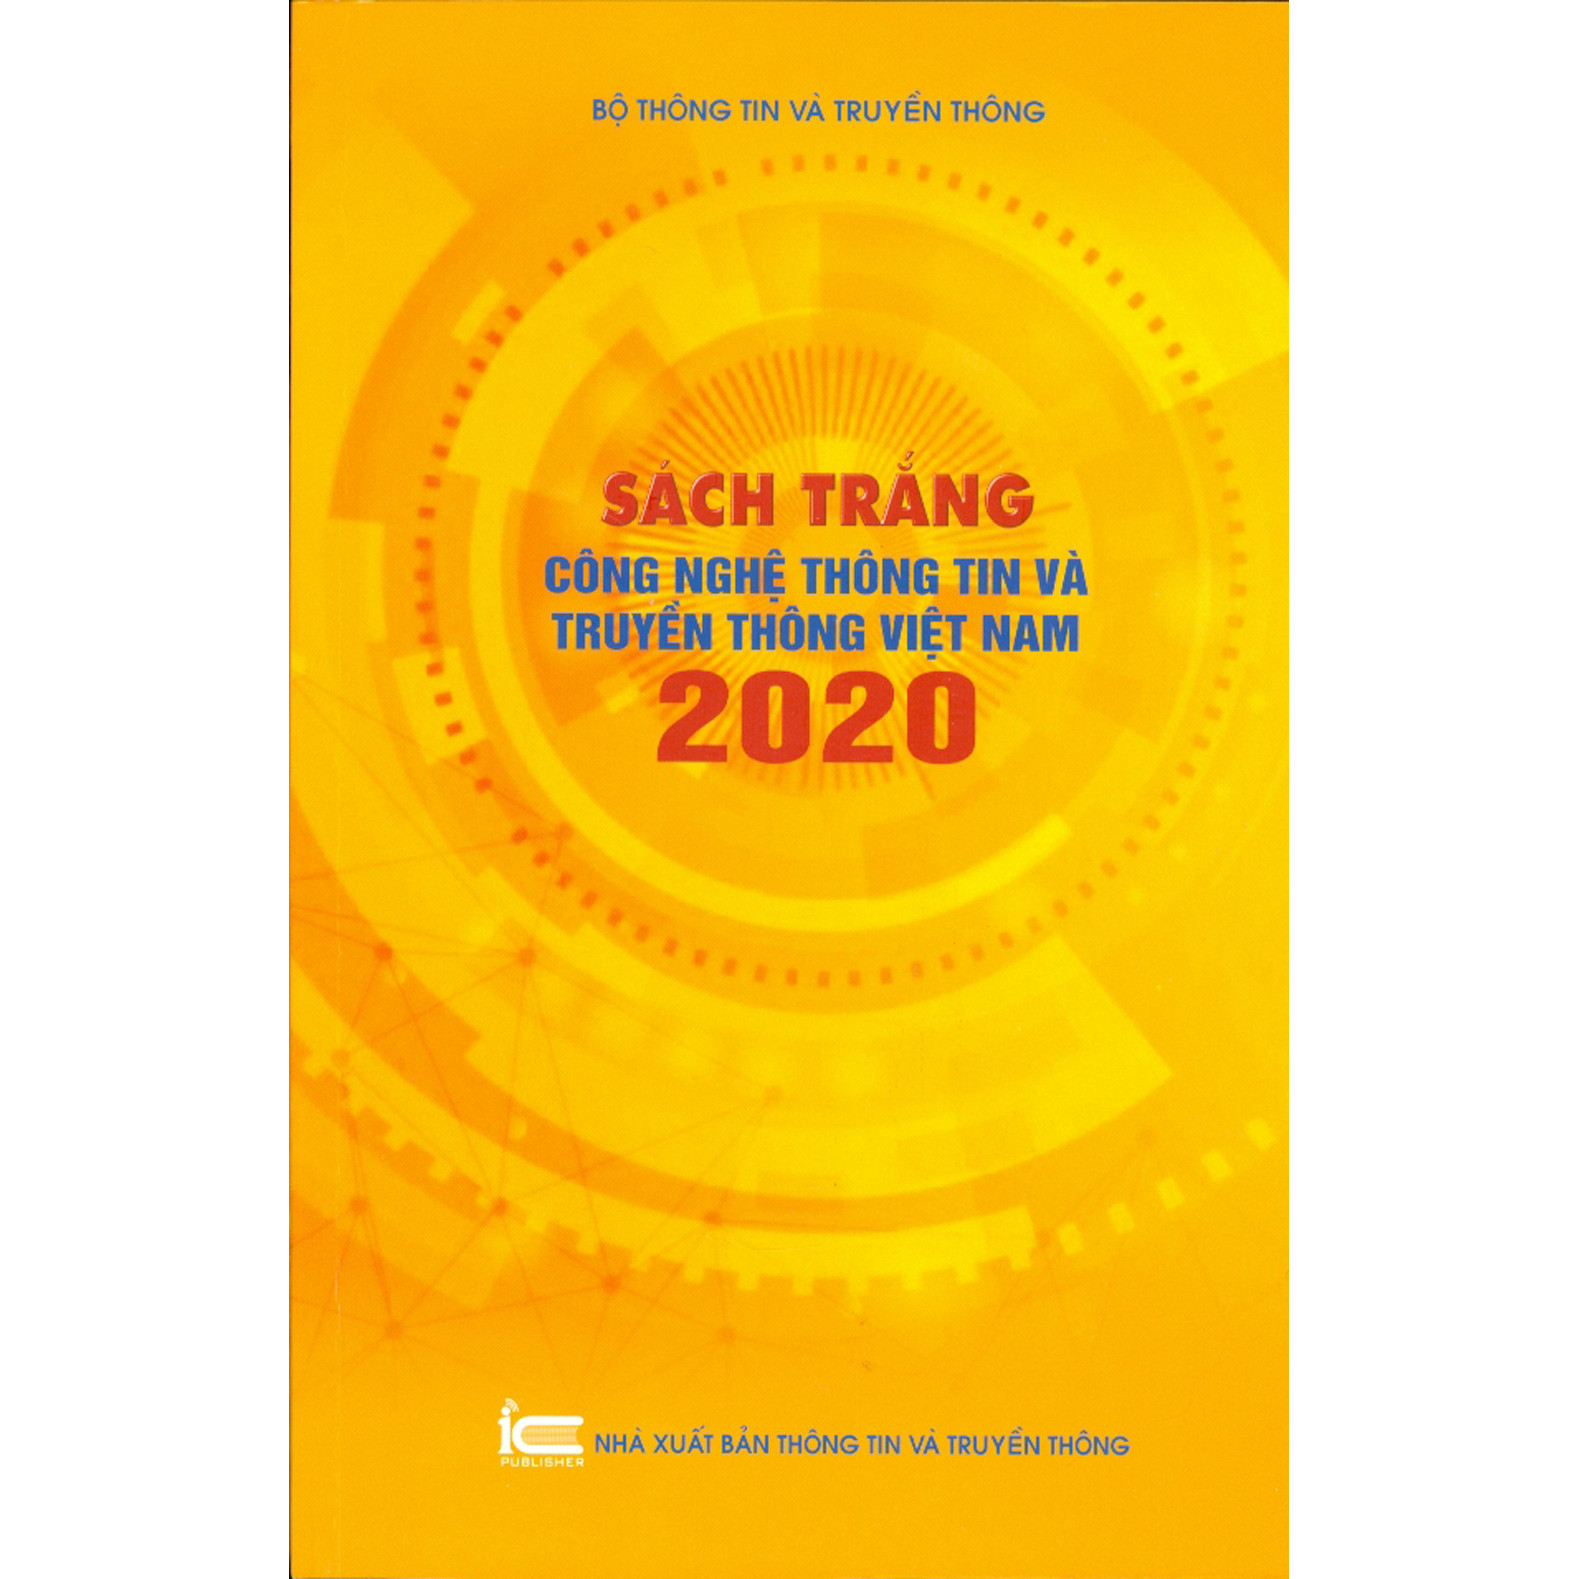 Sách Trắng Công Nghệ Thông Tin Và Truyền Thông Việt Nam 2020